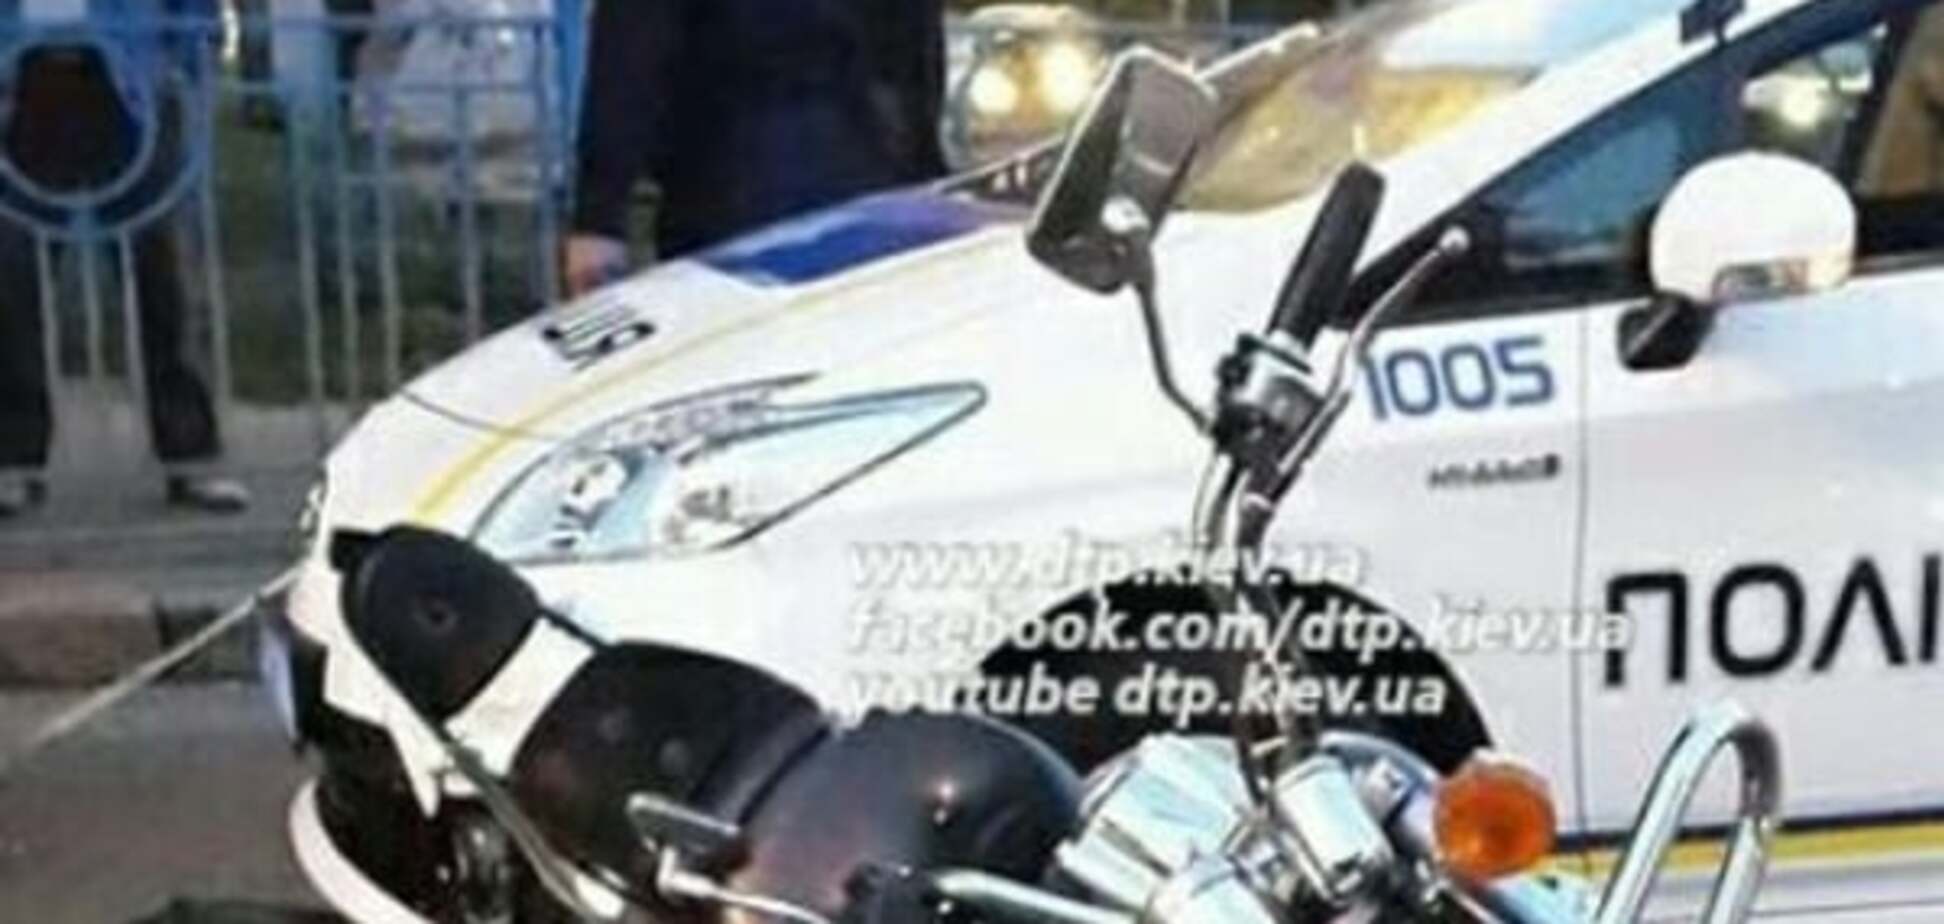 В Киеве автомобиль новой полиции столкнулся с мотоциклом: фотофакт